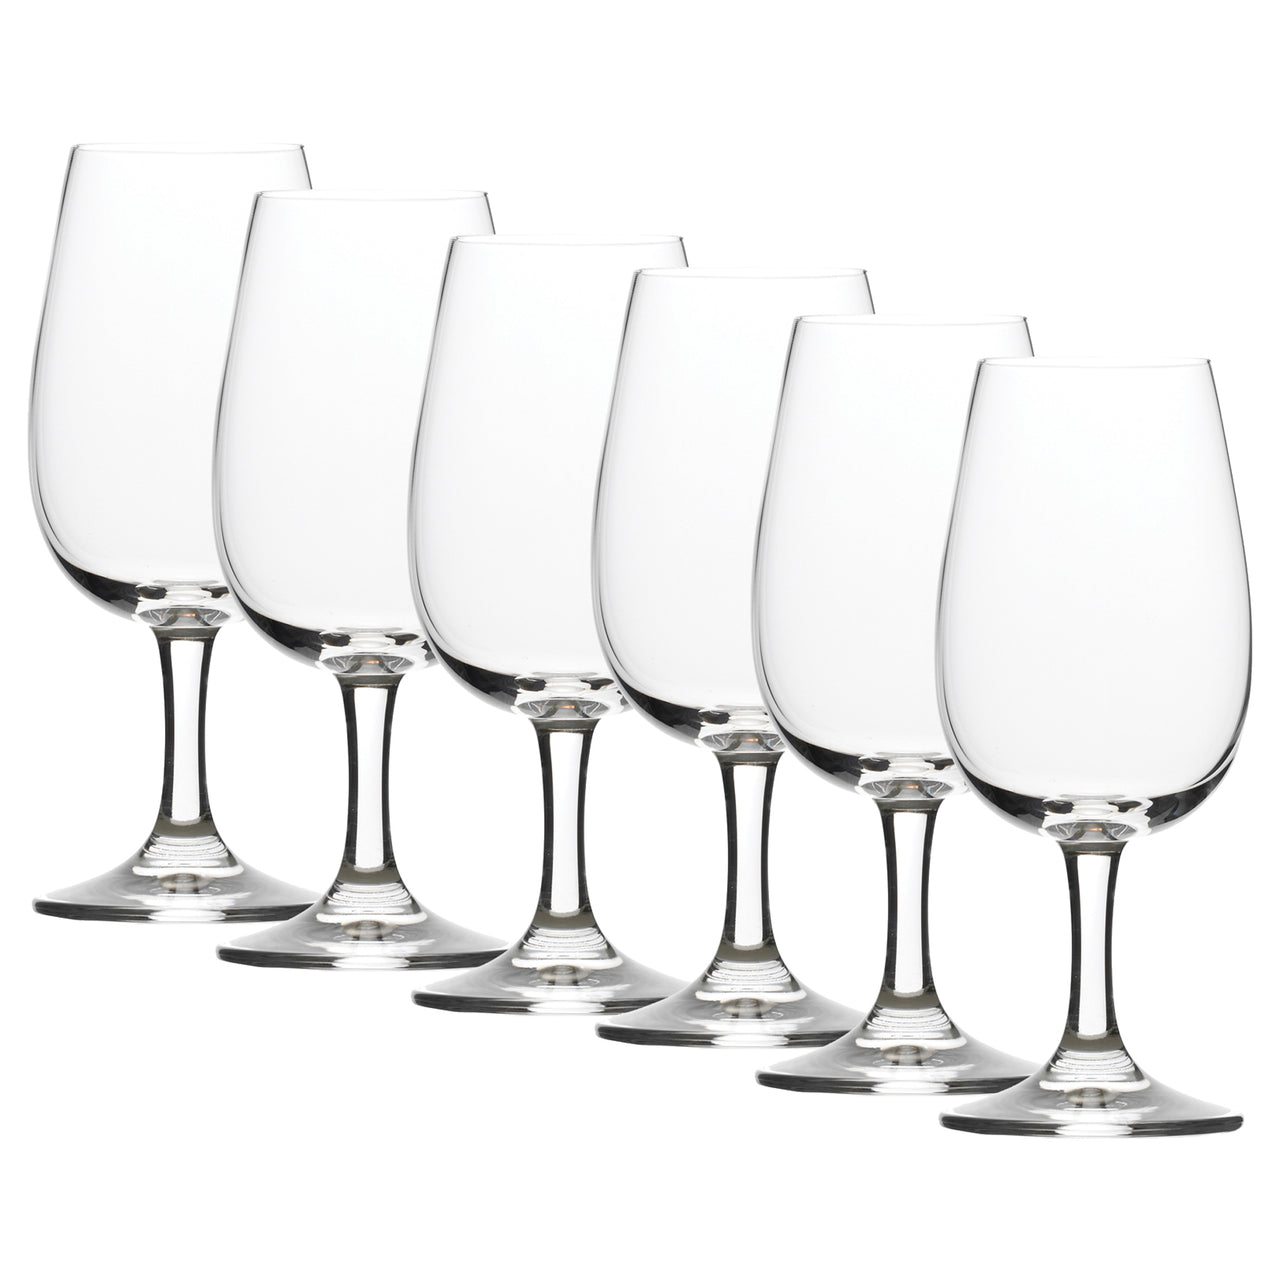 Stolzle 200ml Wine Taster Glasses (Set of 6)